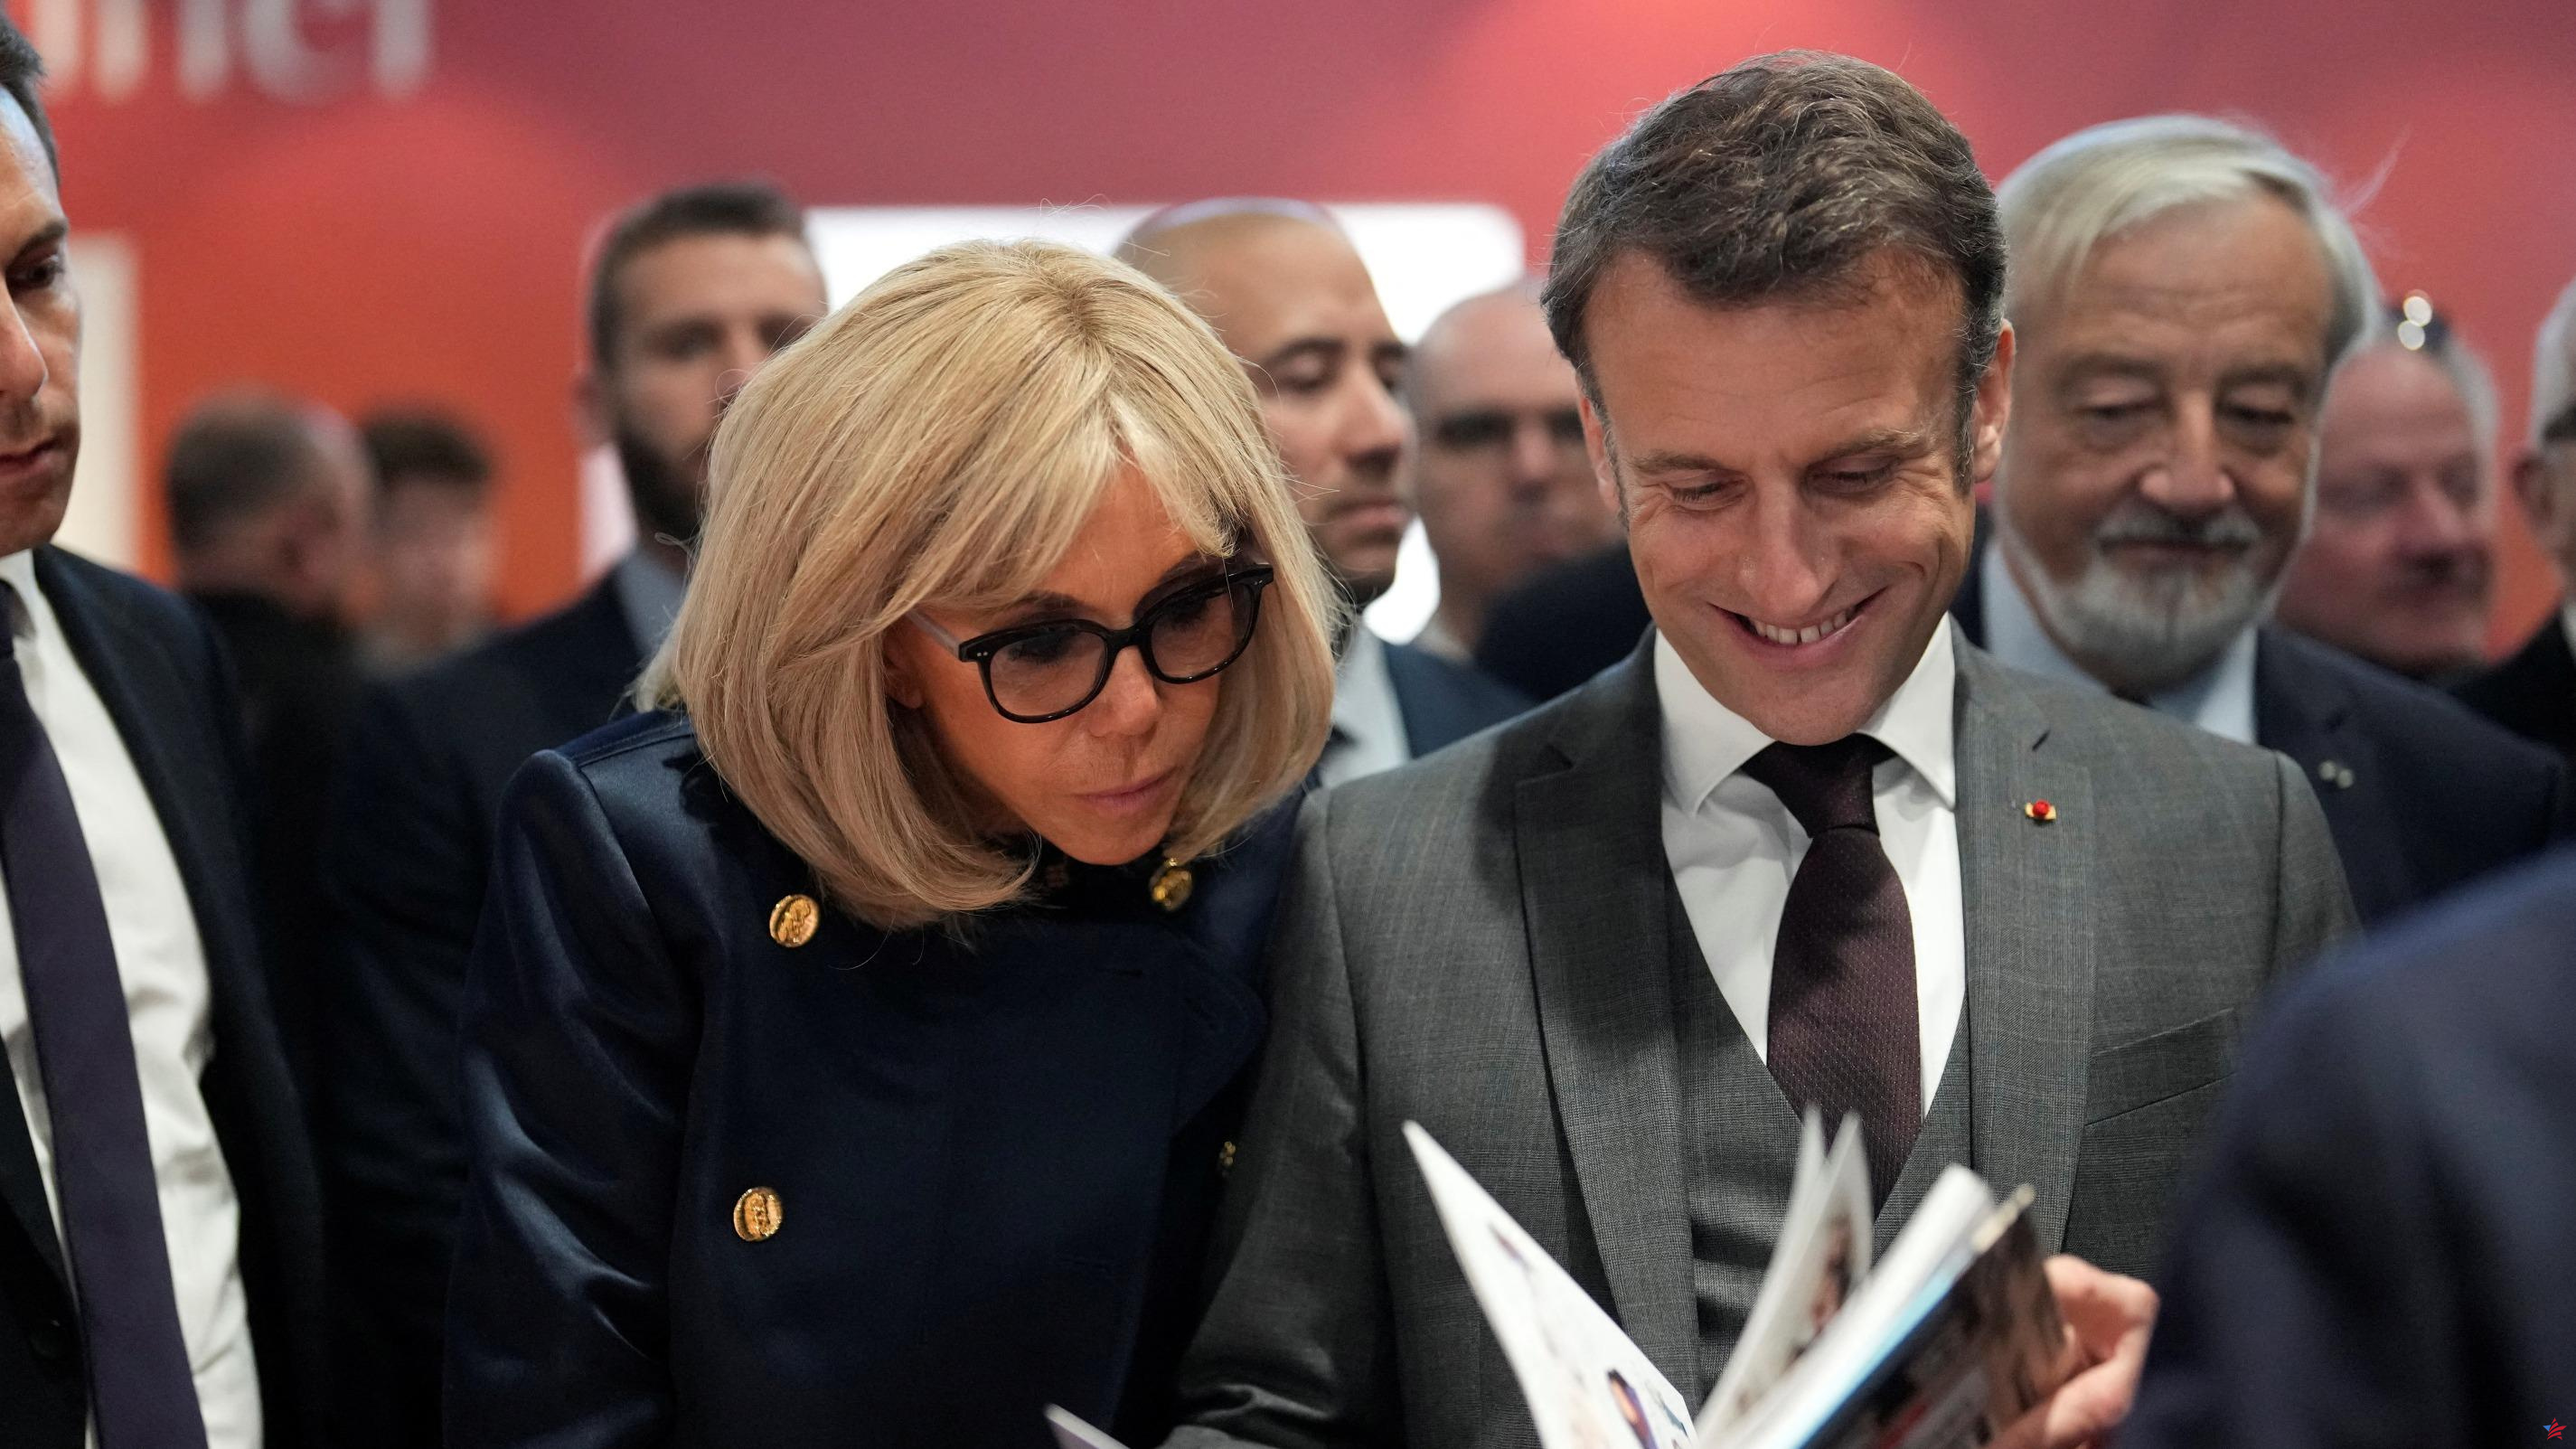 Libros de segunda mano: Macron quiere una contribución para “proteger el precio único” de los libros nuevos